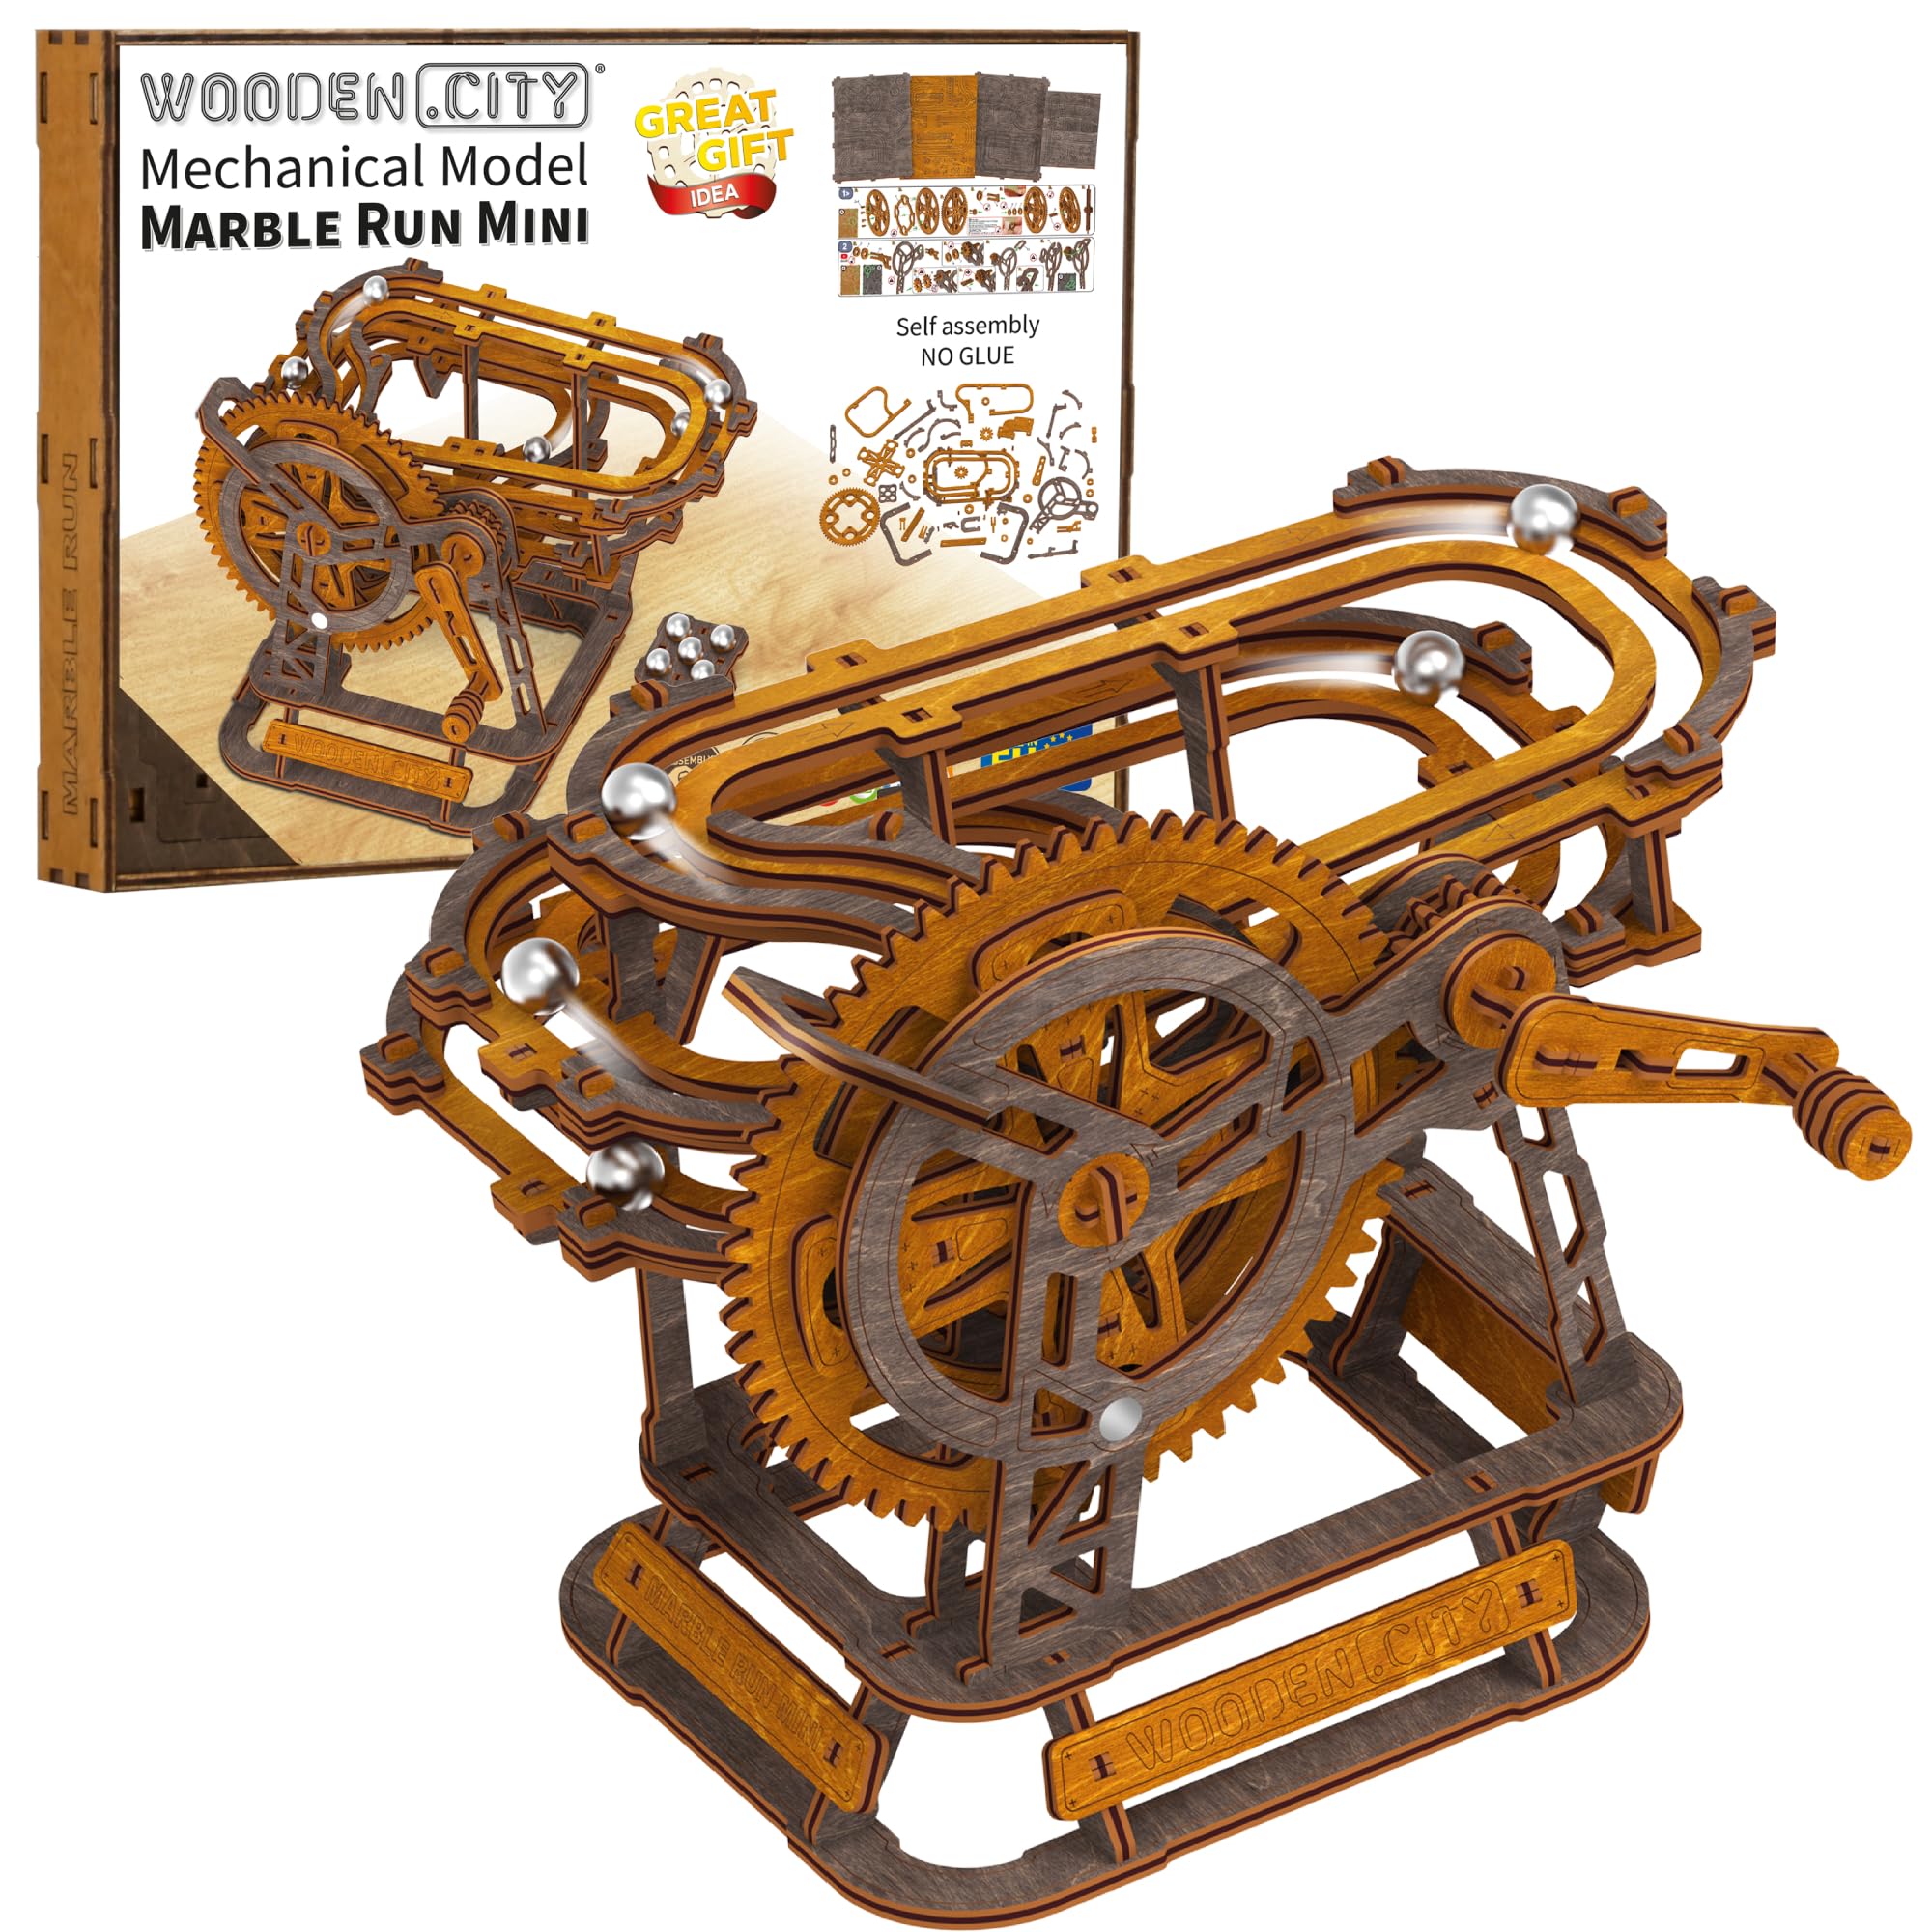 Wooden.City Murmelbahn 3D-Puzzle – europäisch gefertigtes mekahnisches Modellbausatz aus Holz, Marmor-Labyrinth zur Selbstmontage – kein Kleber erforderlich, ideal für Erwachsene und Jugendliche